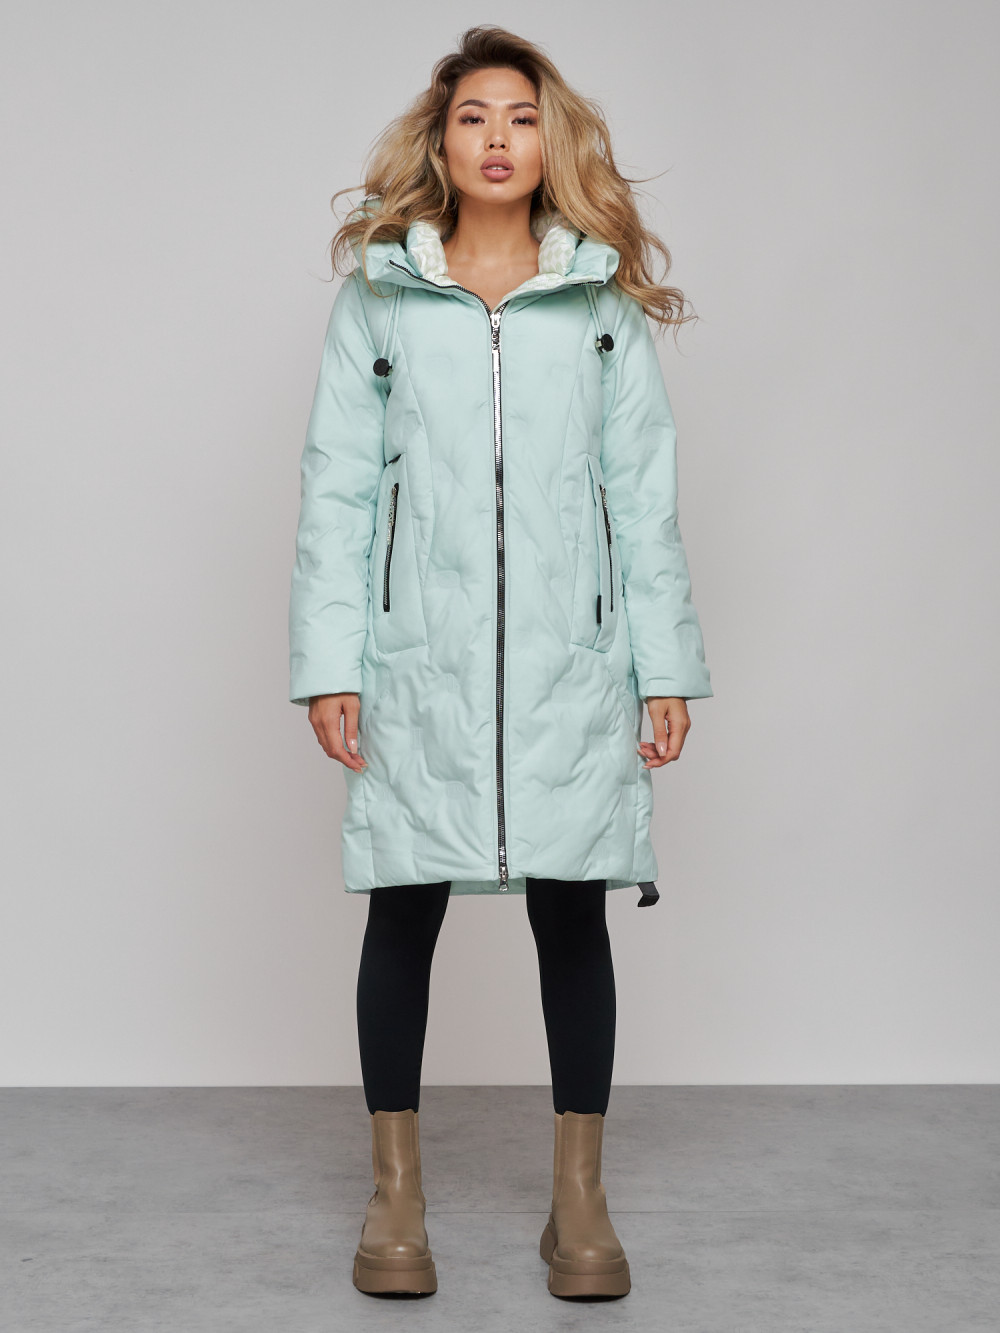 Купить Пальто утепленное молодежное зимнее женское бирюзового цвета 59121Br